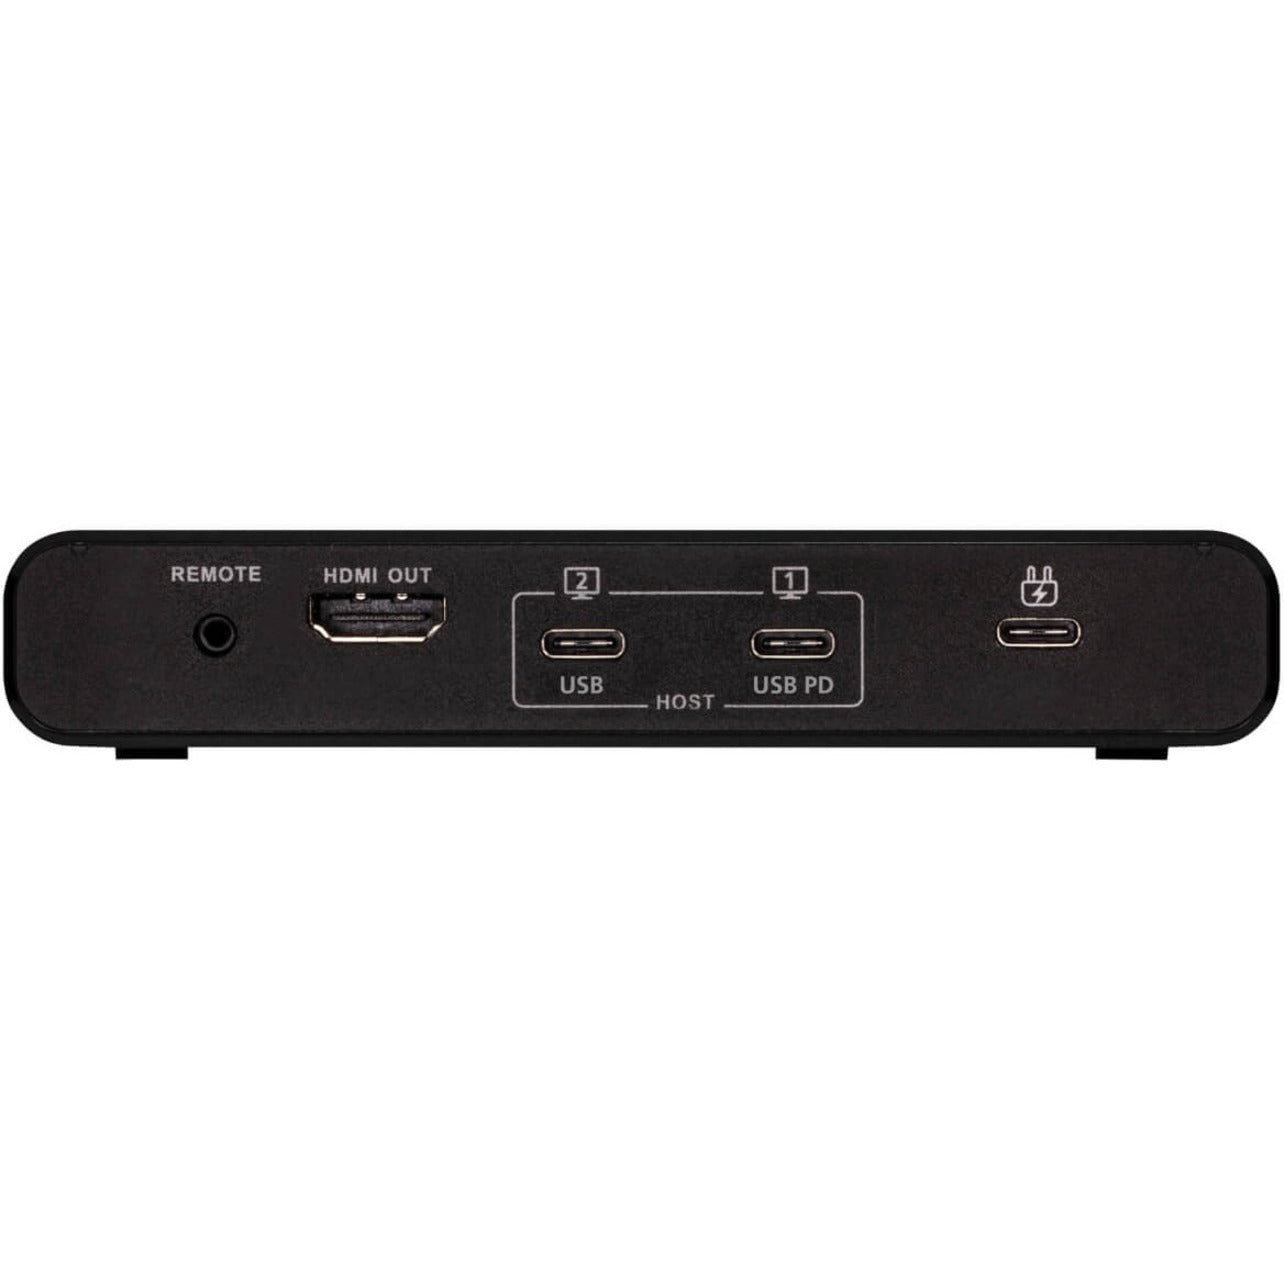 Tripp Lite B003-HC2-DOCK1 2-Port USB-C KVM Dock, Black - 4K HDMI, USB-A Hub